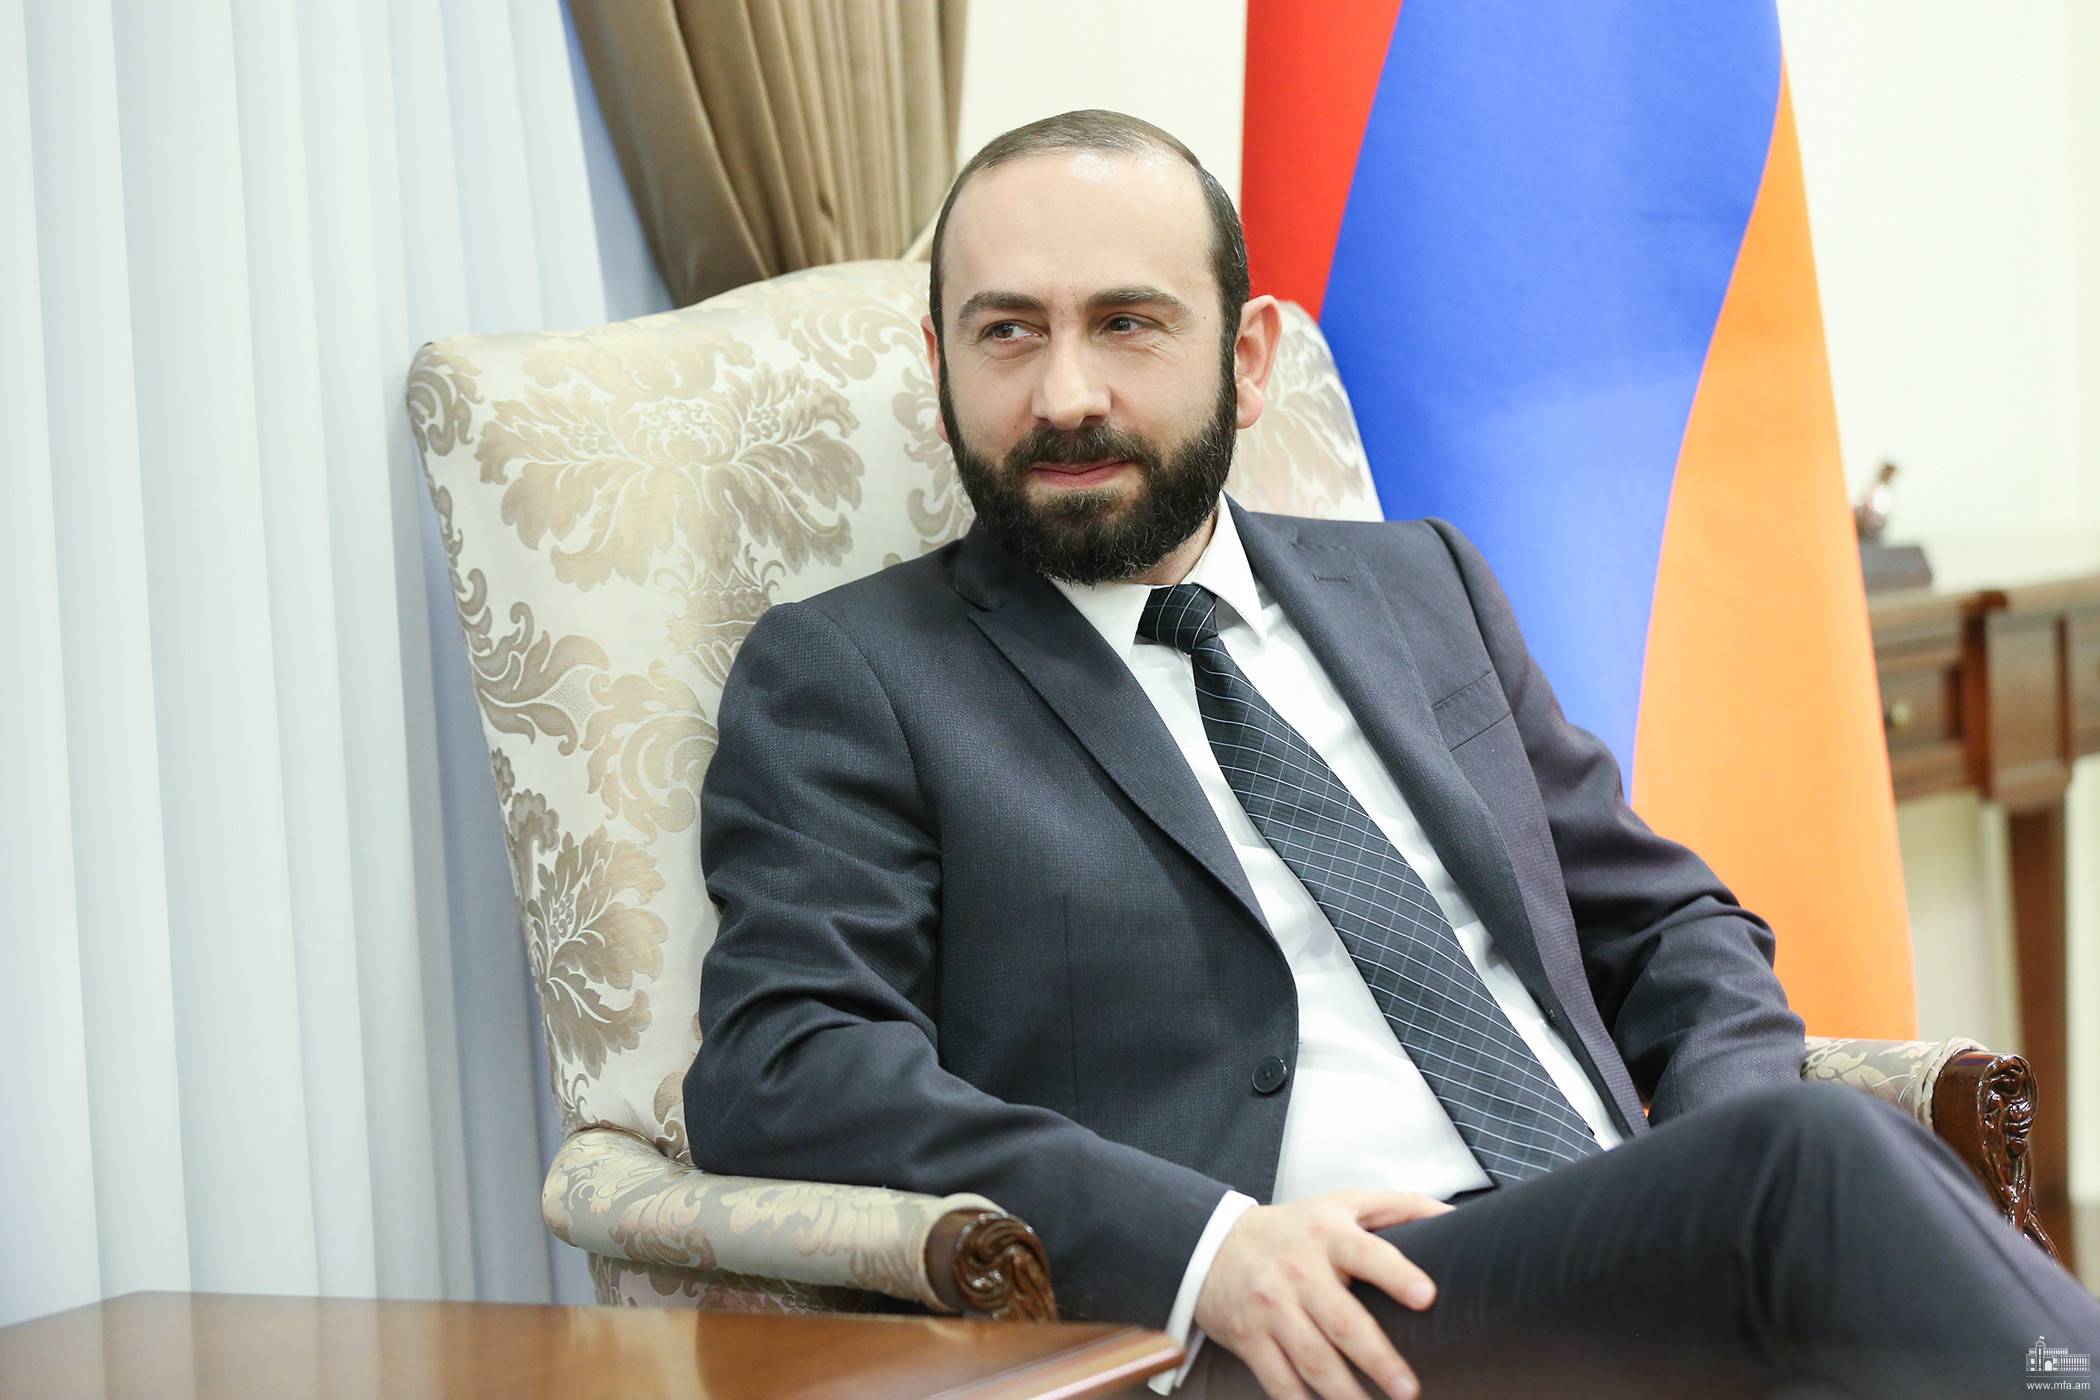 Ermenistan Dışişleri Bakanı Mirzoyan, Toivo Klaar'ın başkanlığındaki heyet ile bir araya geldi